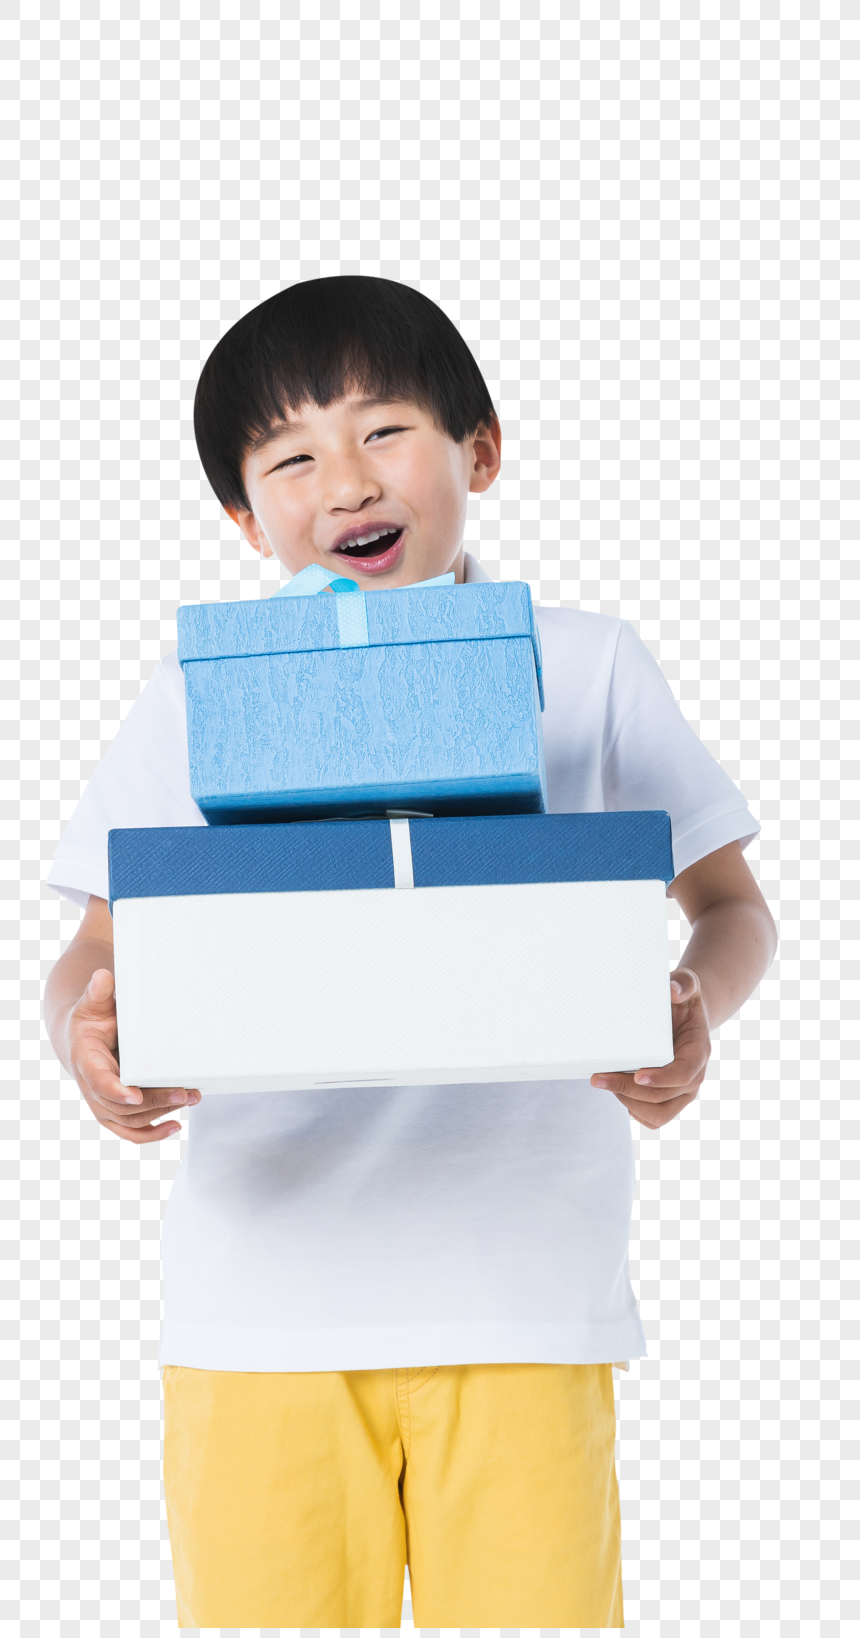 ギフト用の箱を持つ子供イメージ グラフィックス Id Prf画像フォーマットpng Jp Lovepik Com